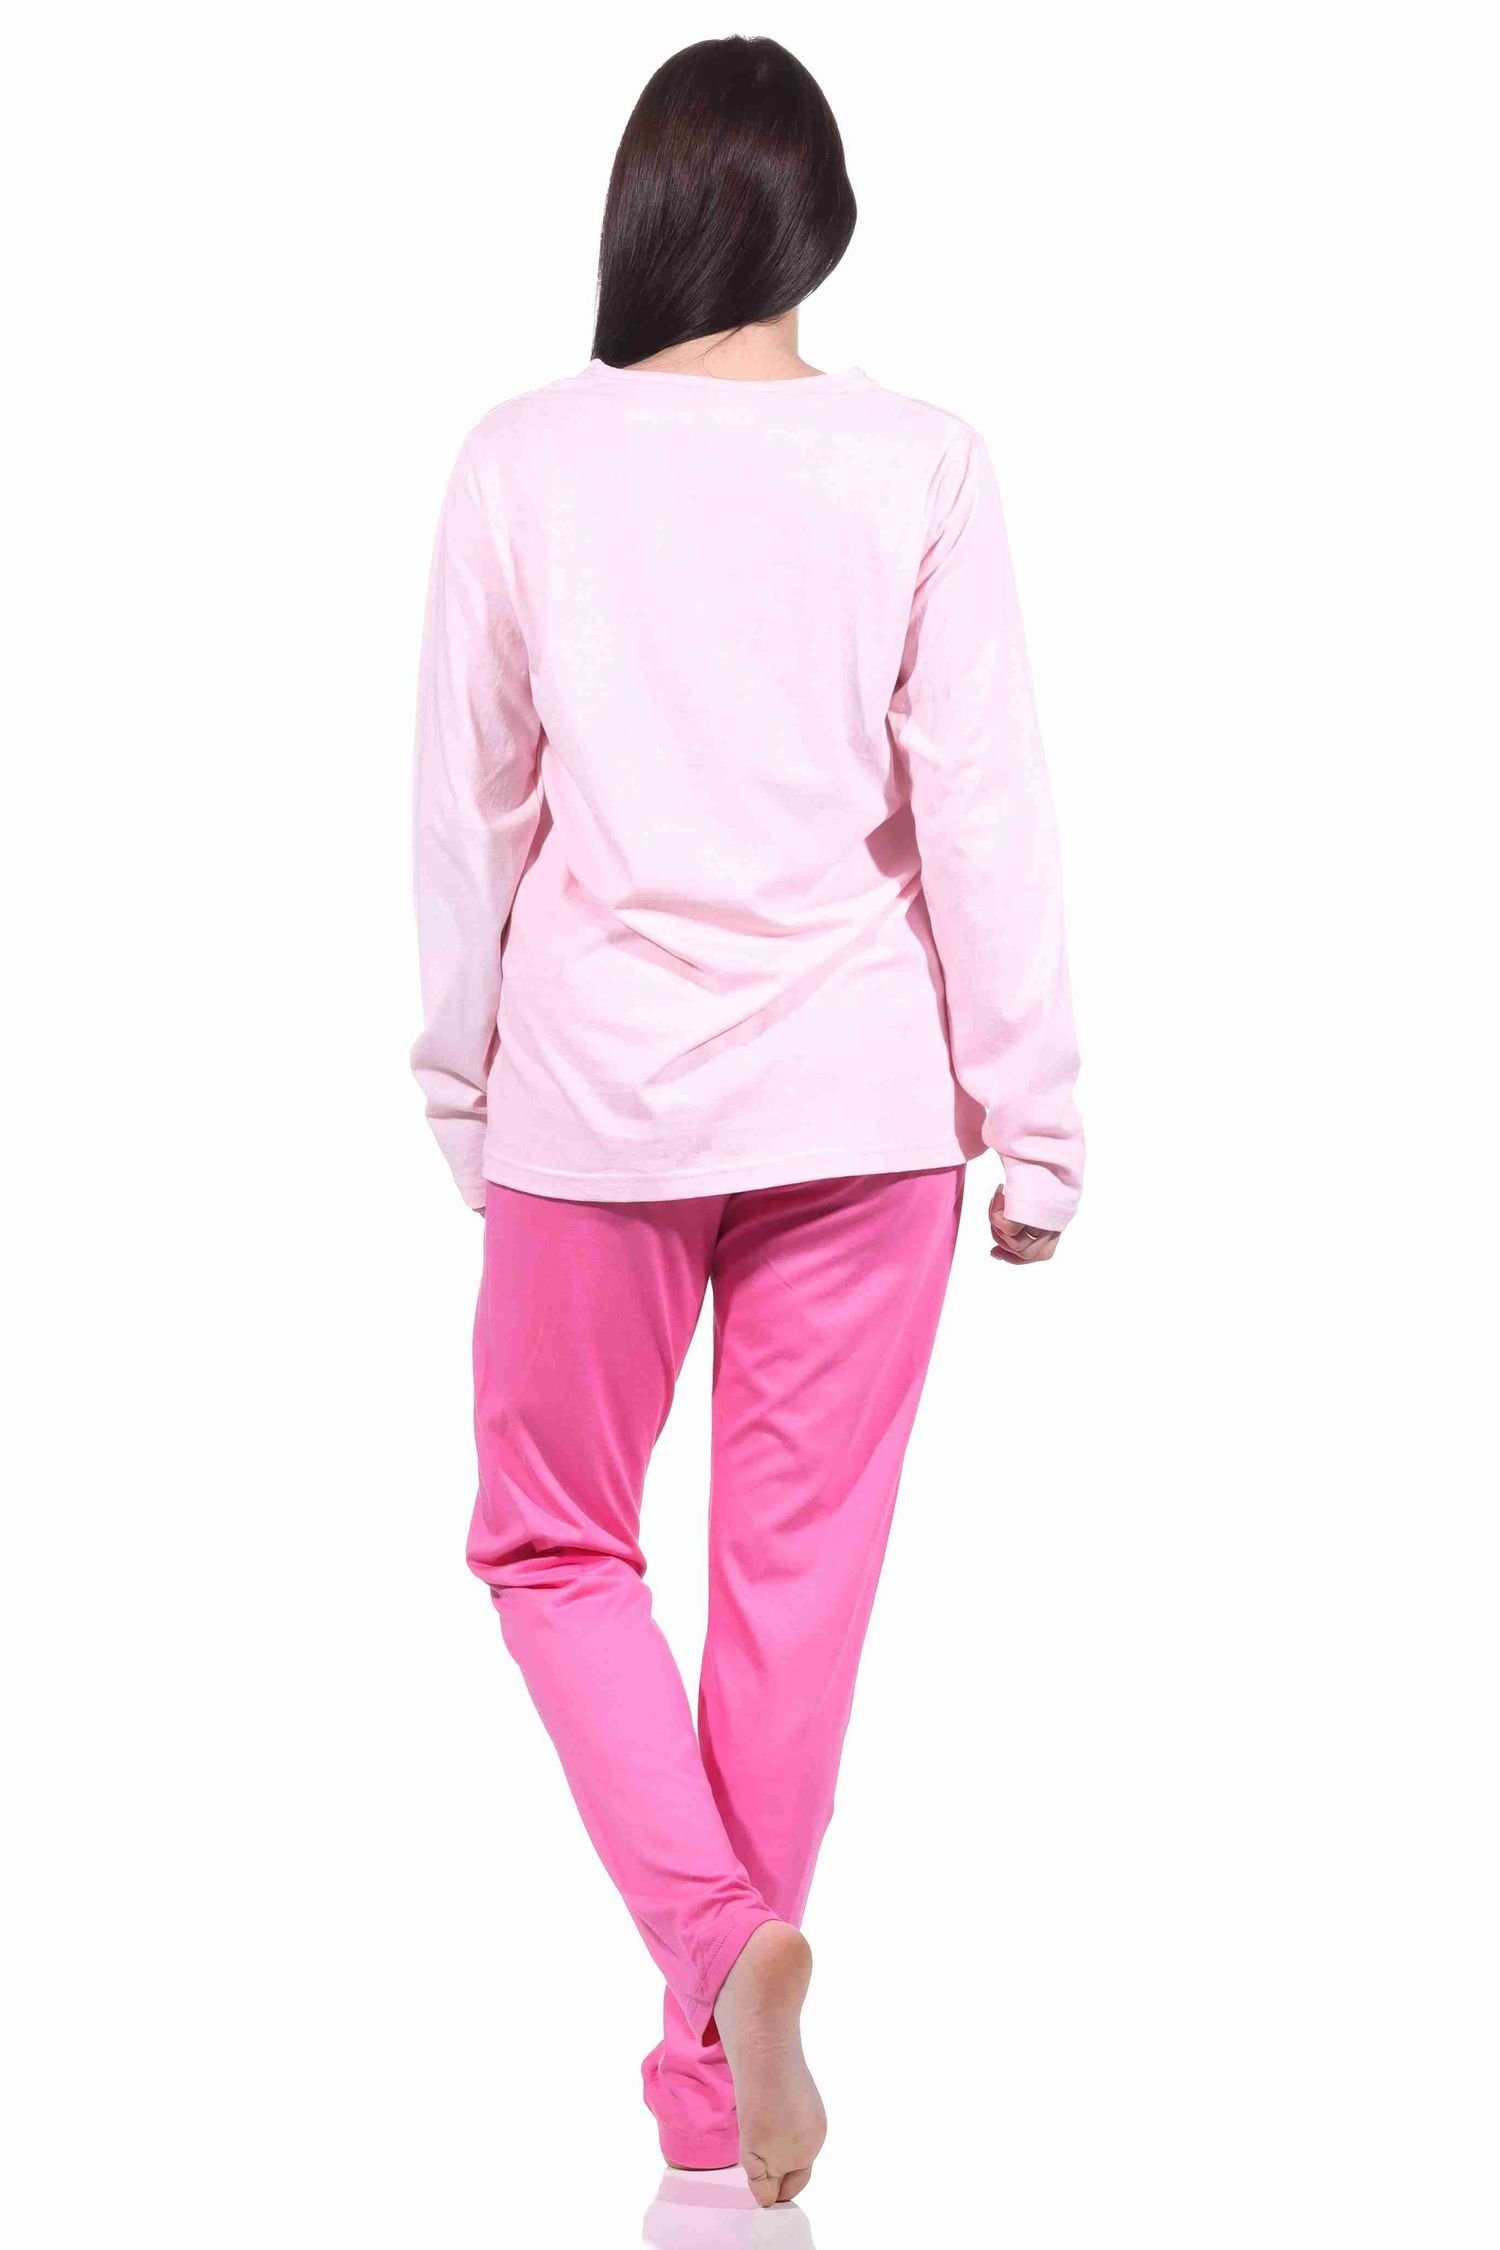 by Damen Normann rosa mit 904 - RELAX langarm Herzmotiv 10 212 Pyjama Pyjama Schlafanzug